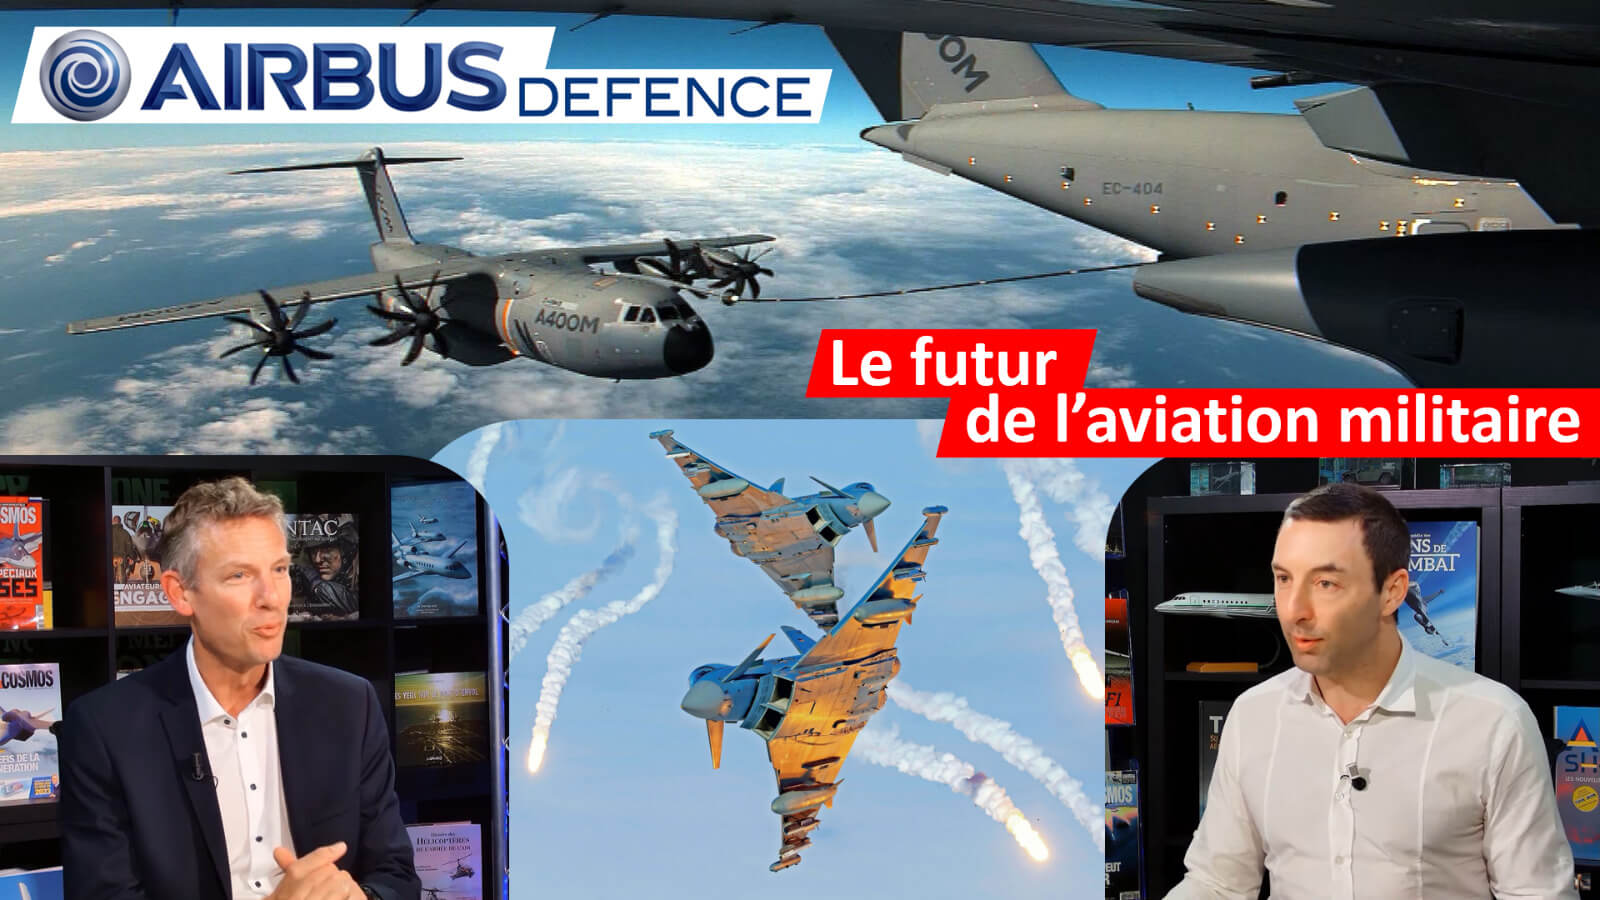 Comment Airbus Defence prépare le futur de l'aviation militaire